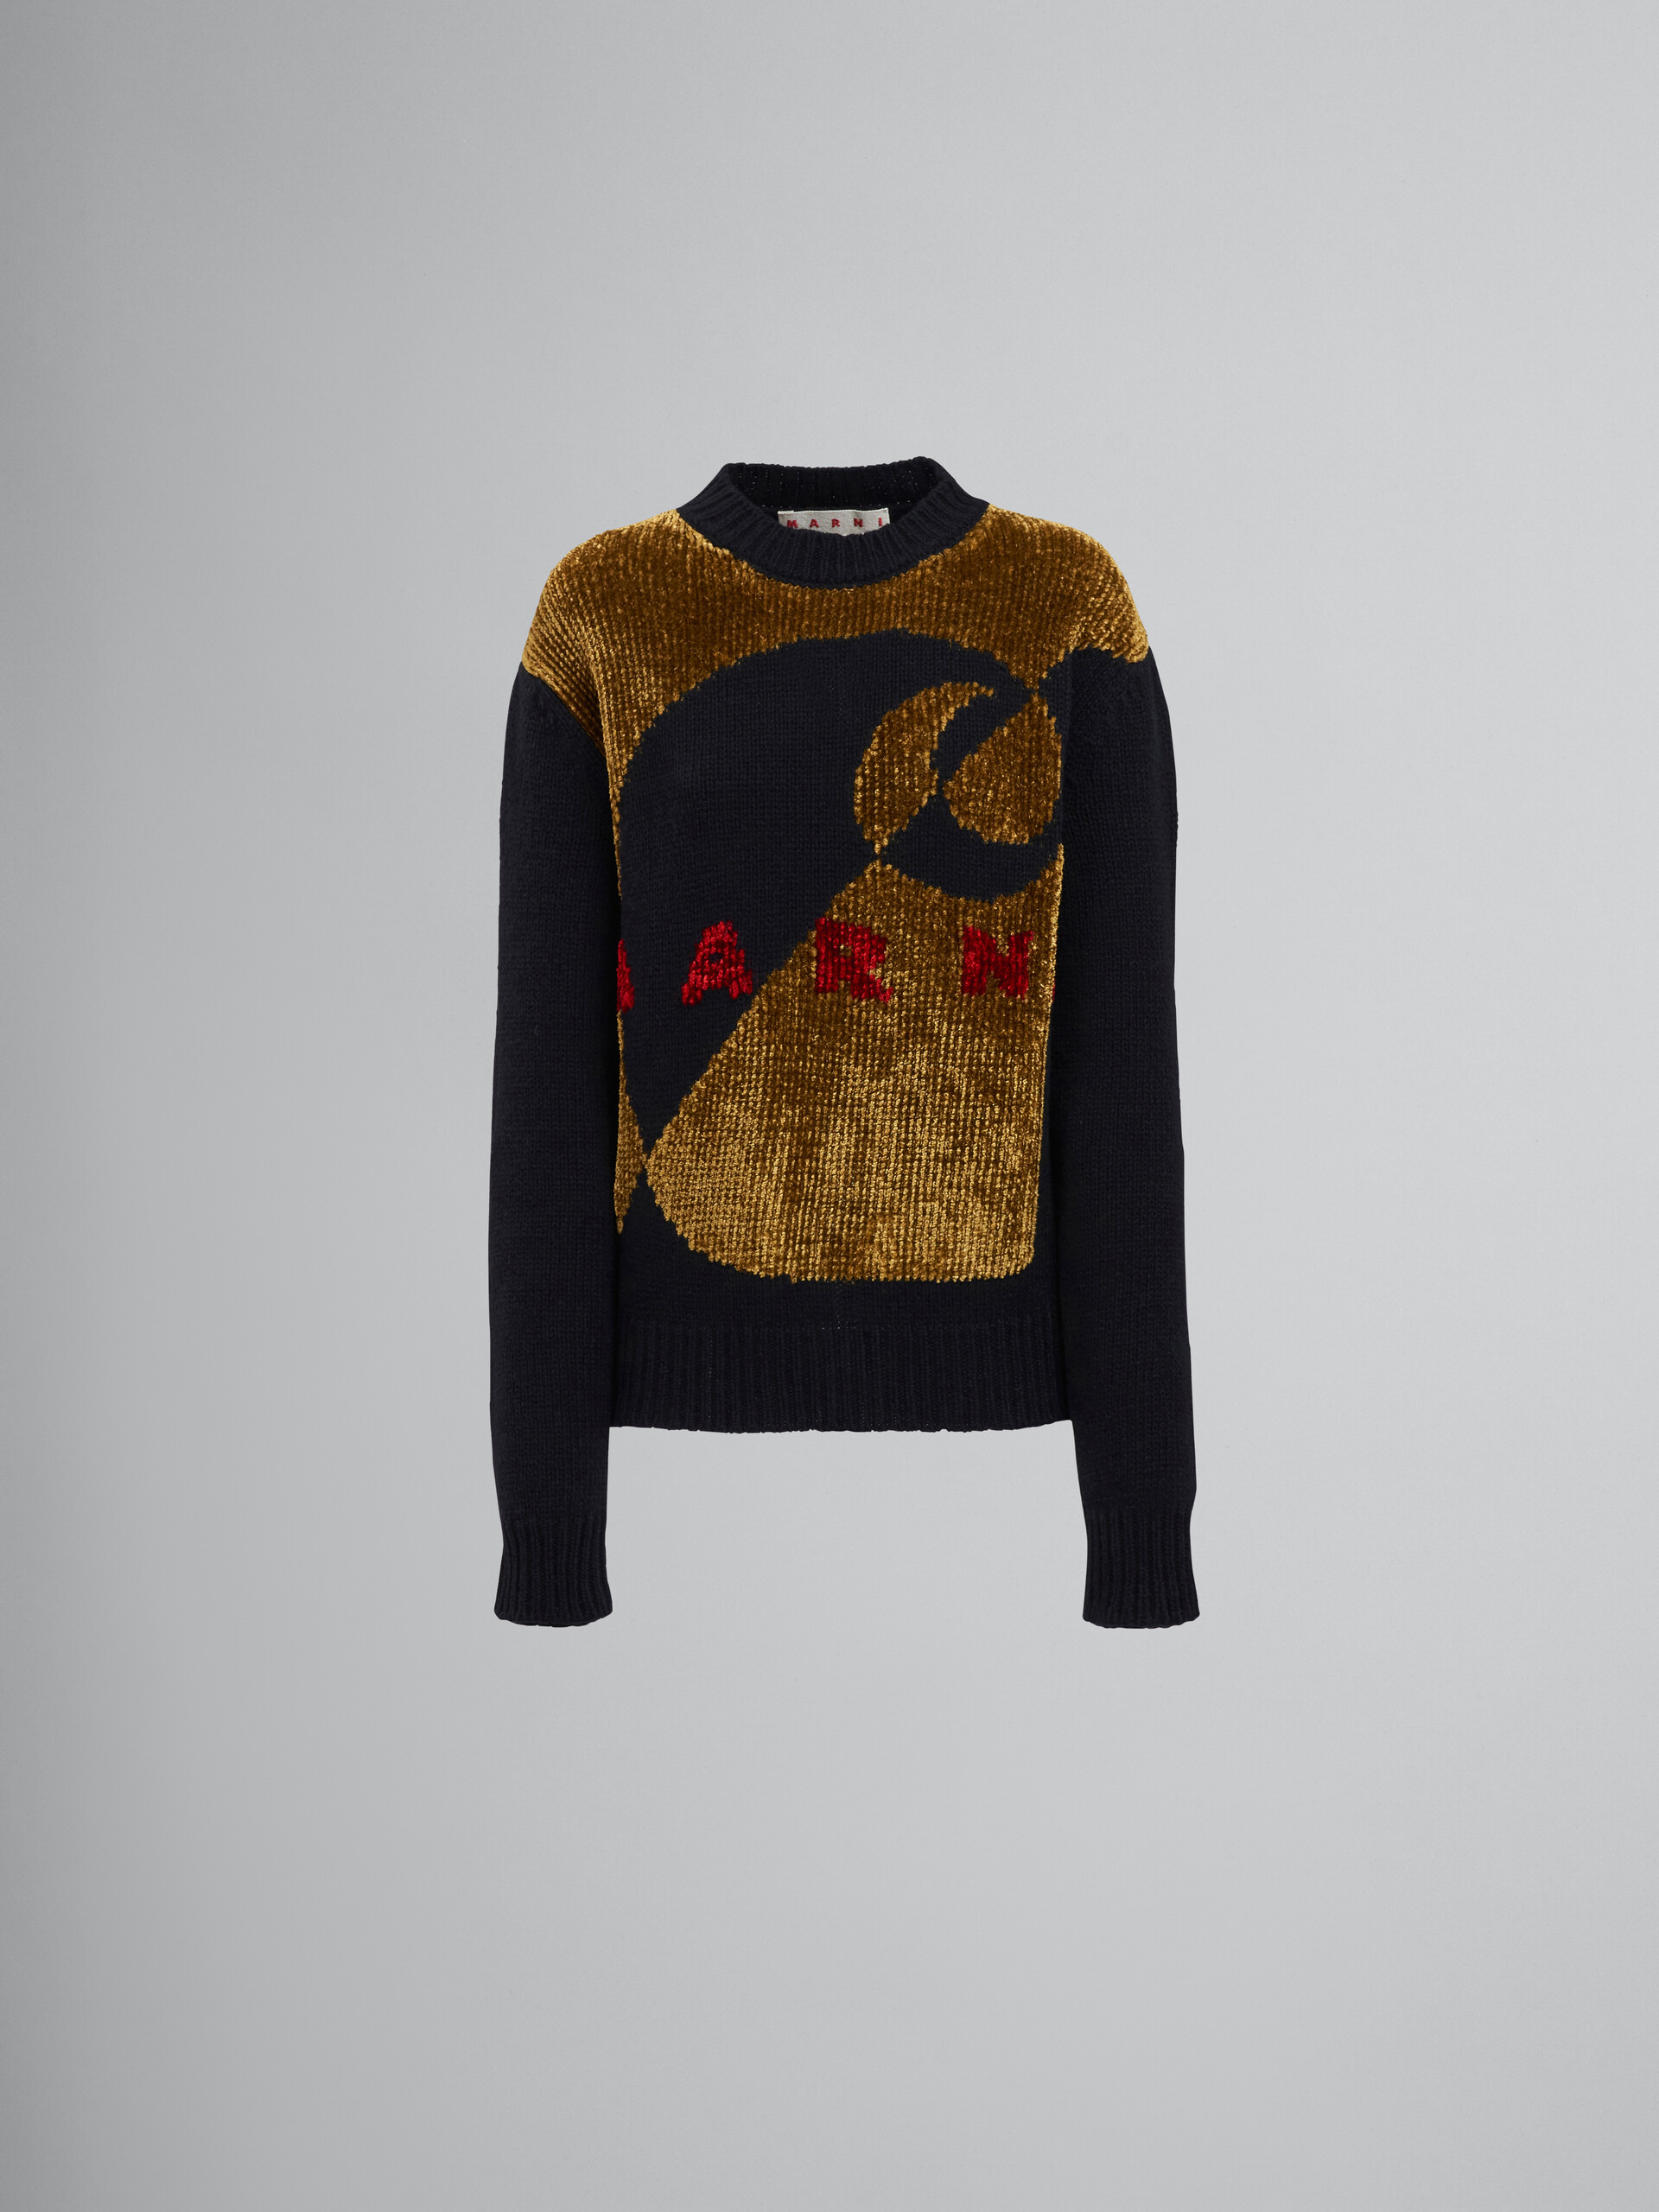 MARNI x CARHARTT WIP - Jersey de cuello redondo de lana negra y chenilla con logotipo - jerseys - Image 1